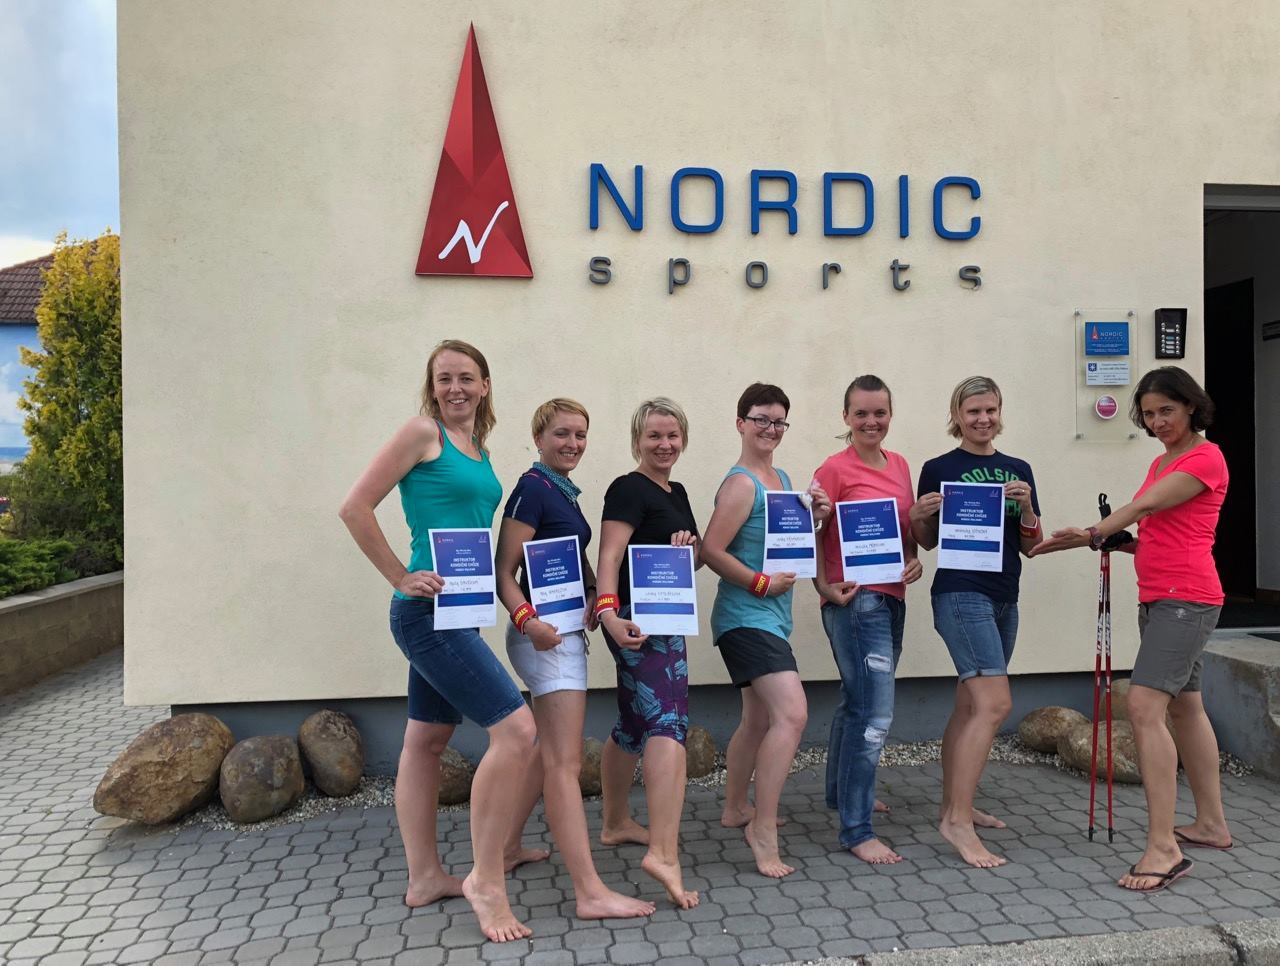 Instruktorky kondiční chůze / nordic walking s čerstvým osvědčením (28. 5. 2018, Nordic sports, Brno). Uprostřed Lenka Křivánková